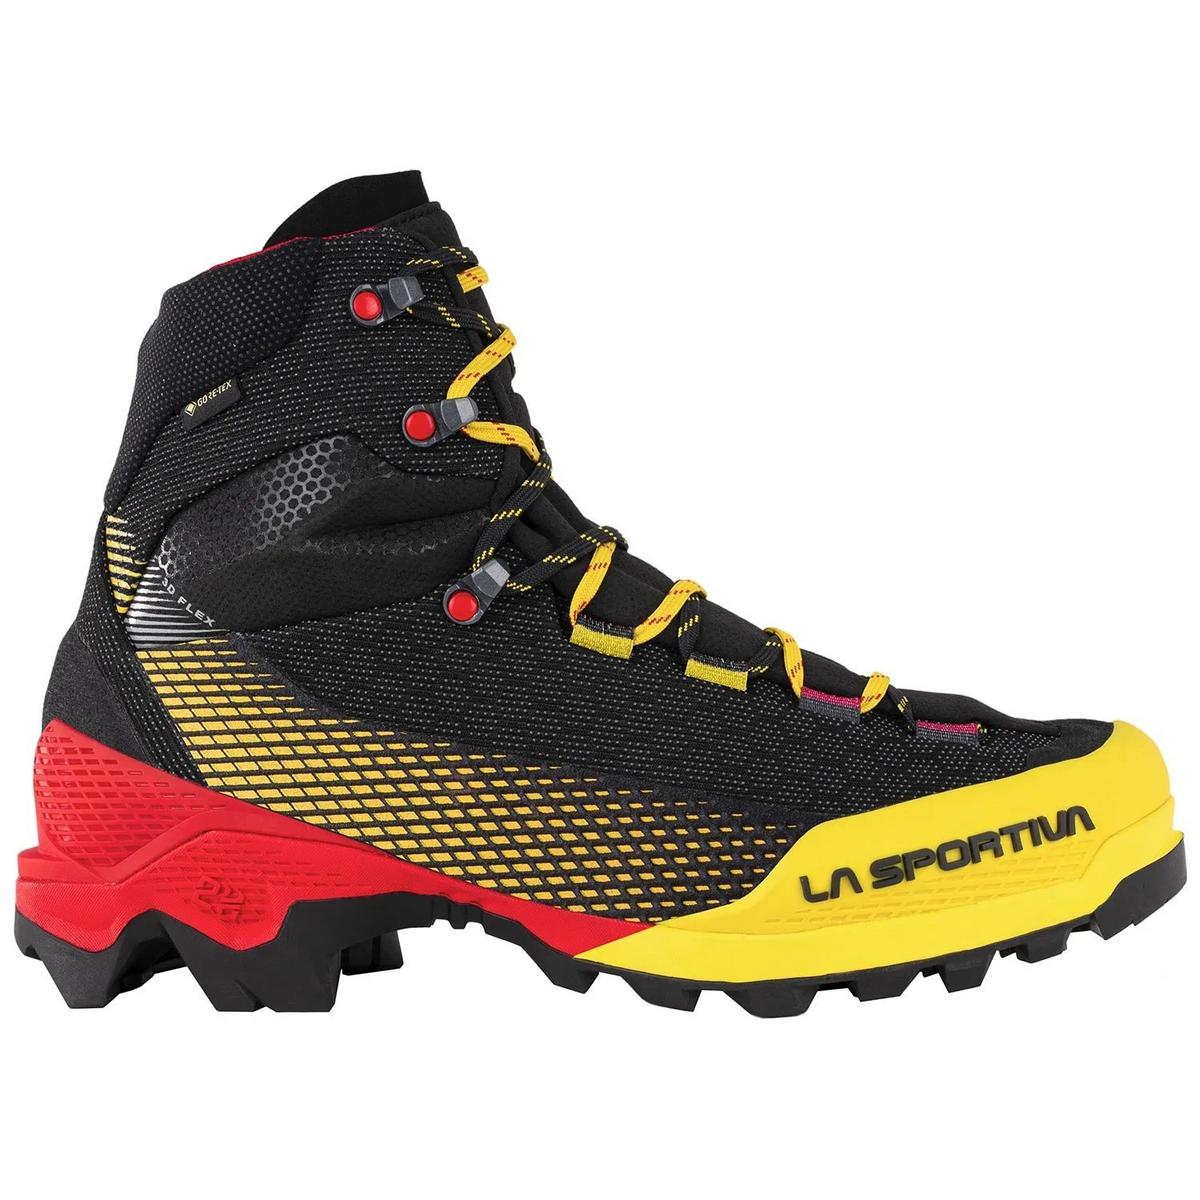 La Sportiva Men's Aequilibrium ST GORE-TEX -Mountaineering Boots